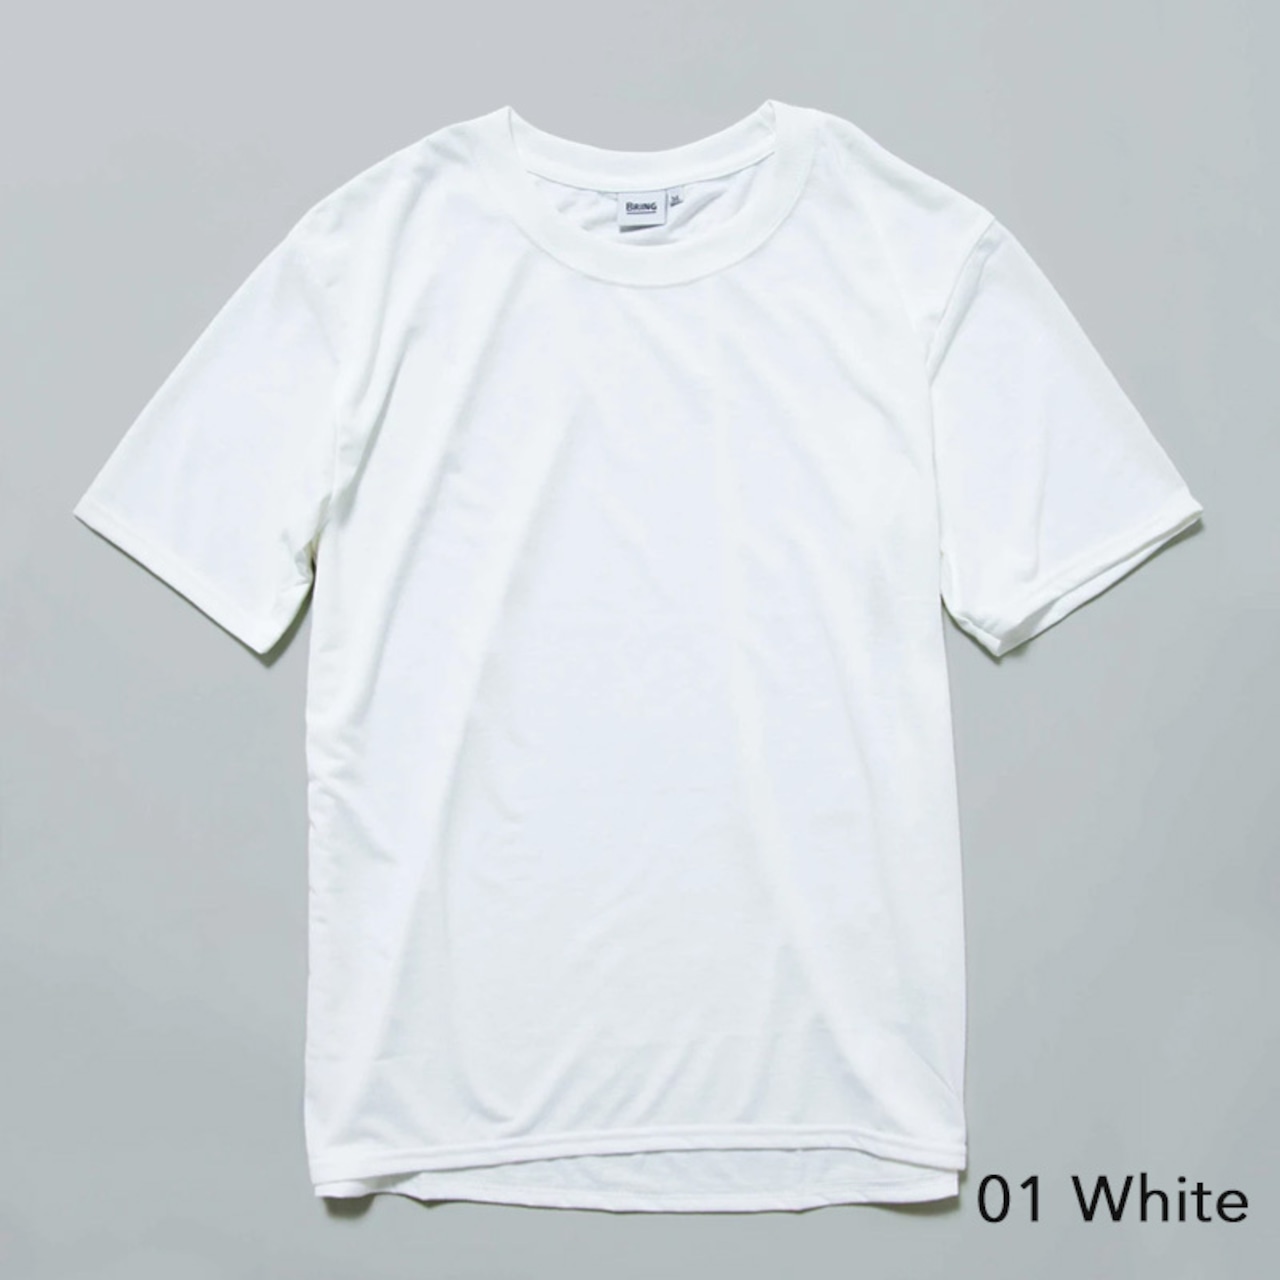 BRING(ブリング) T-shirt Basic DRYCOTTONY Tシャツ ベーシック ドライ 半袖 ユニセックス アウトドア 用品 キャンプ グッズ